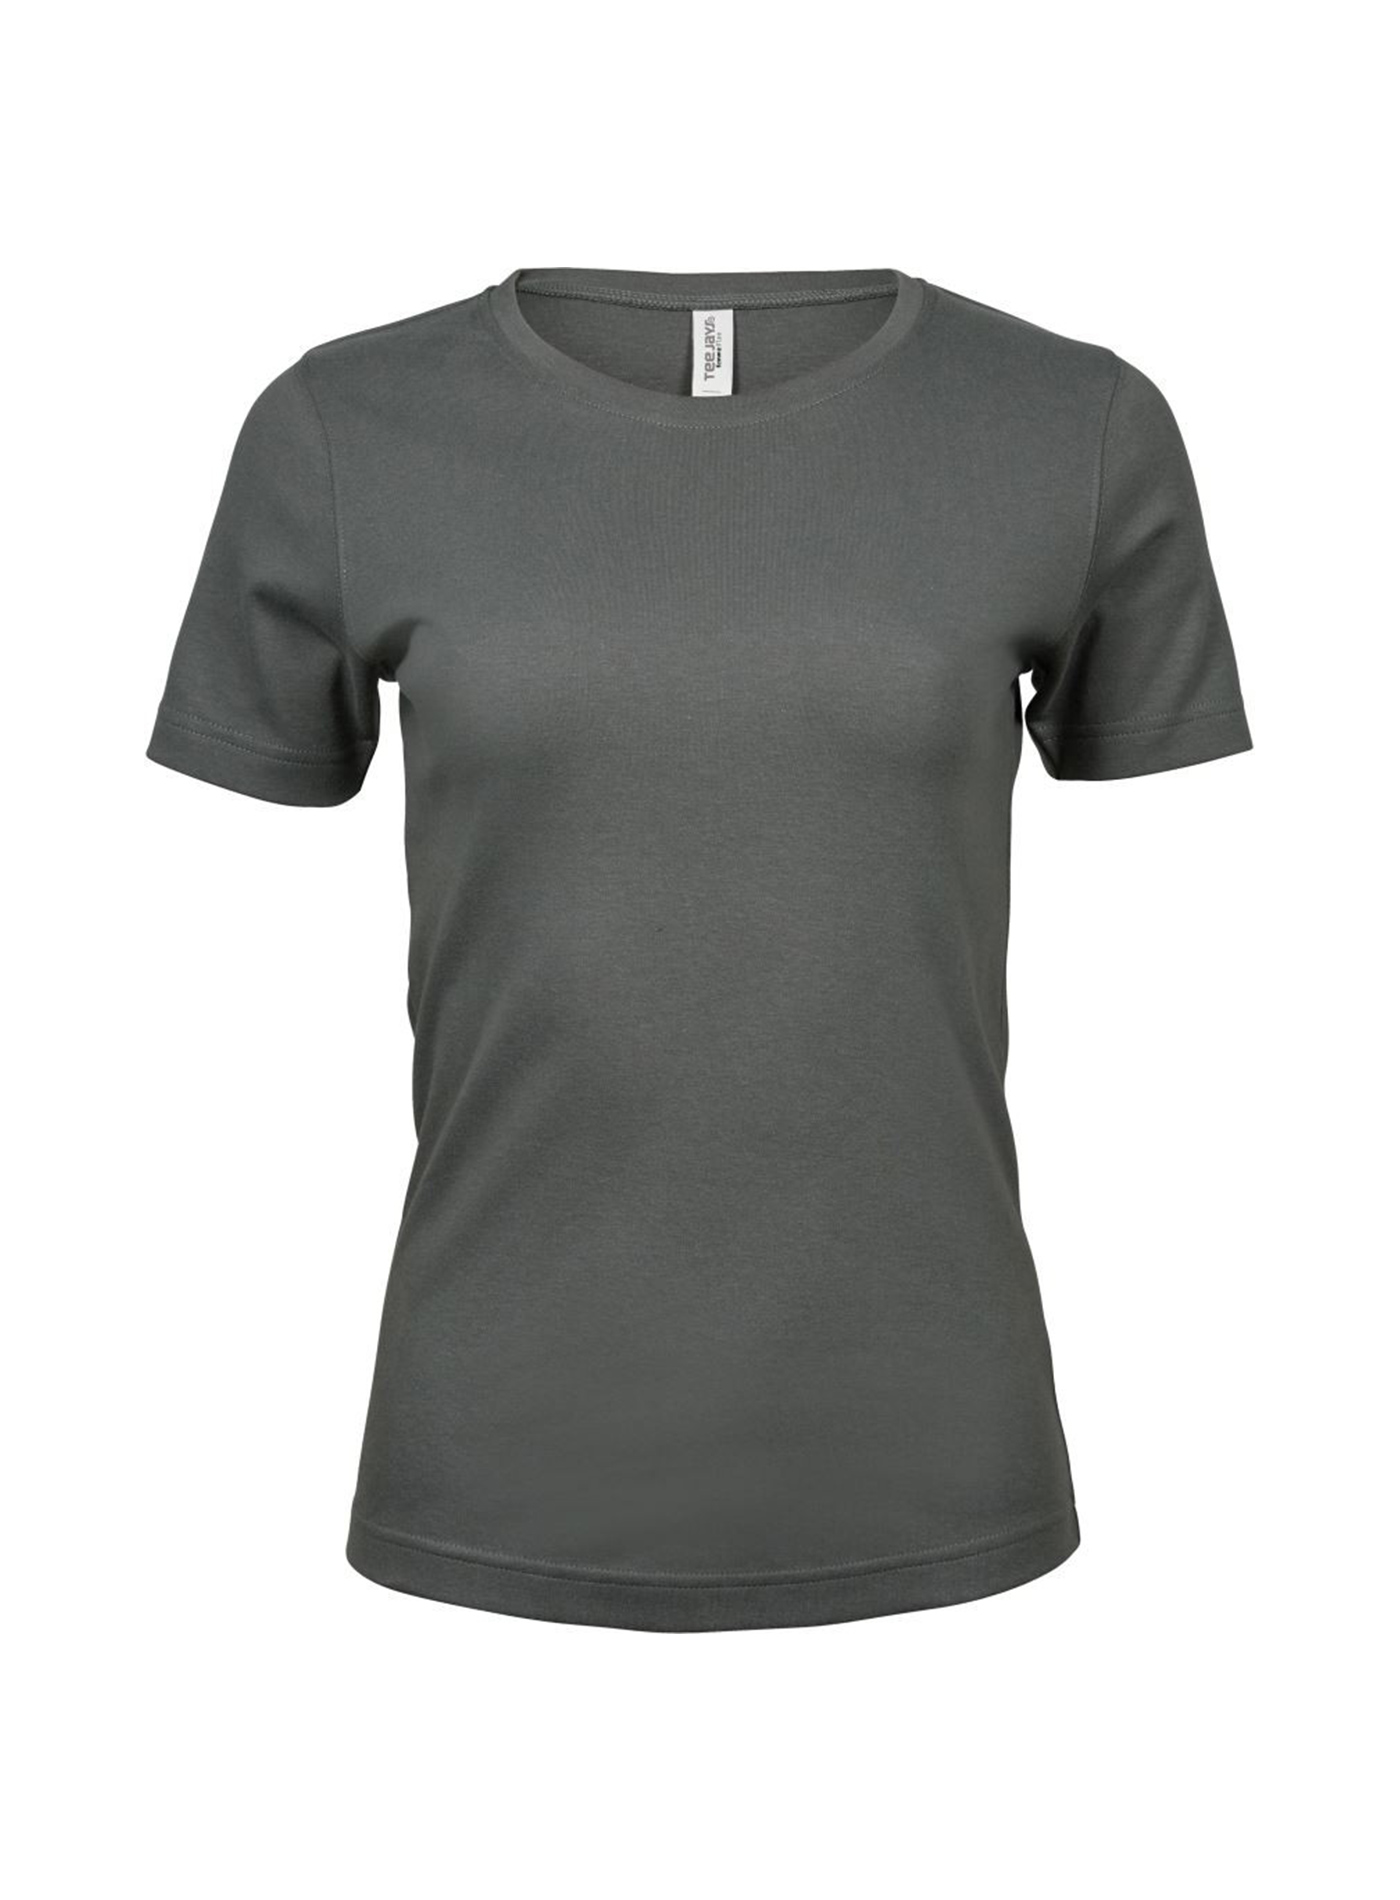 Silné bavlněné tričko Tee Jays Interlock - Sytě šedá S